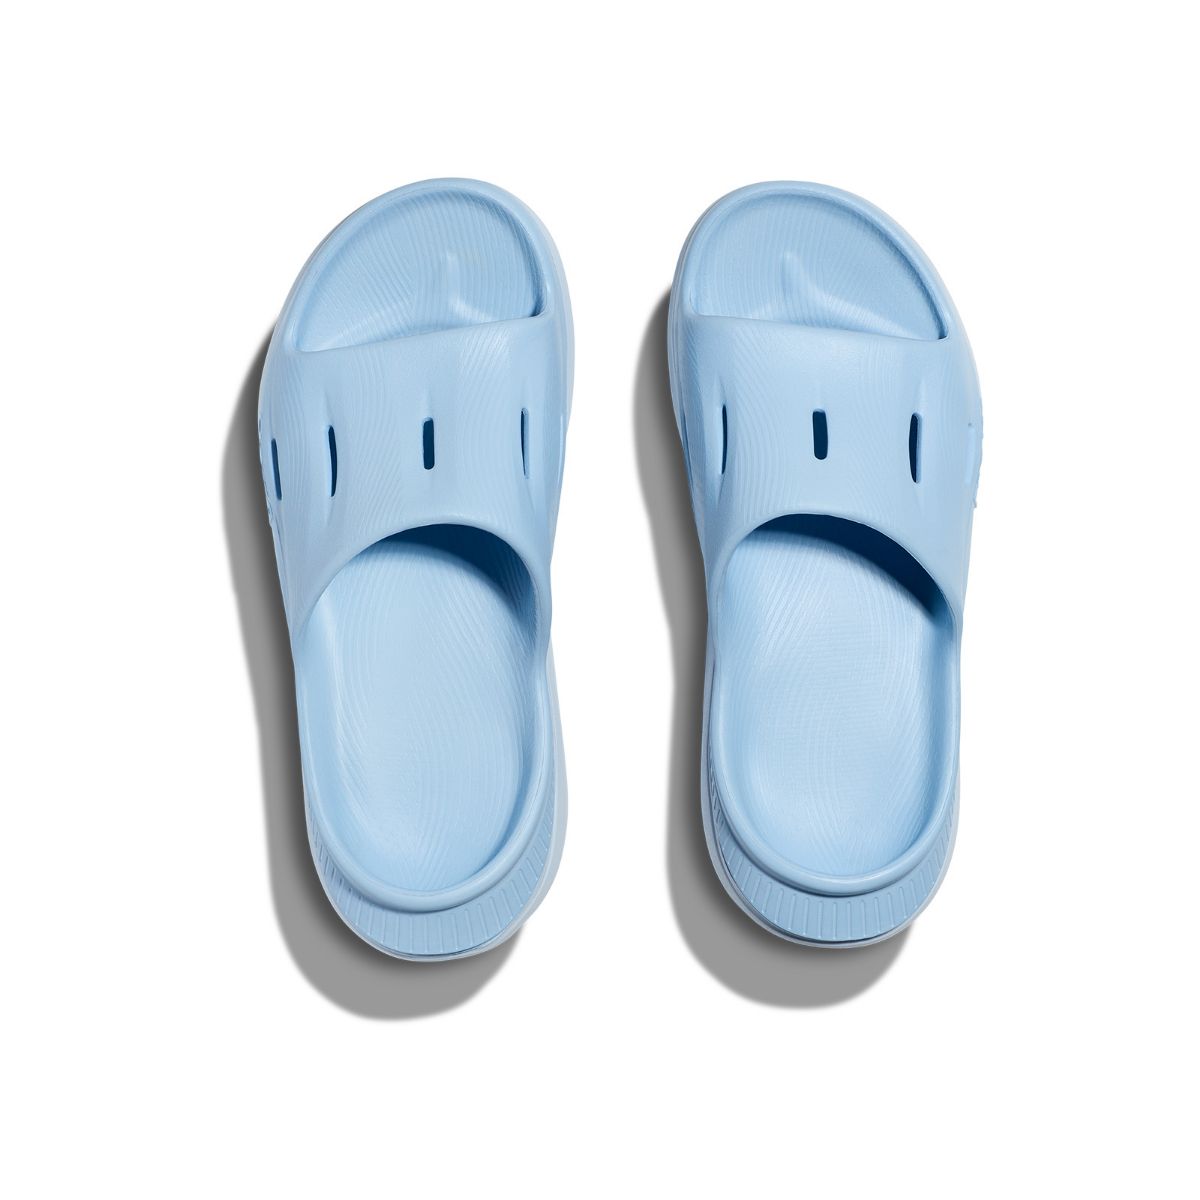 Ora Recovery Slide 3 - lyseblå slippers fra Hoka